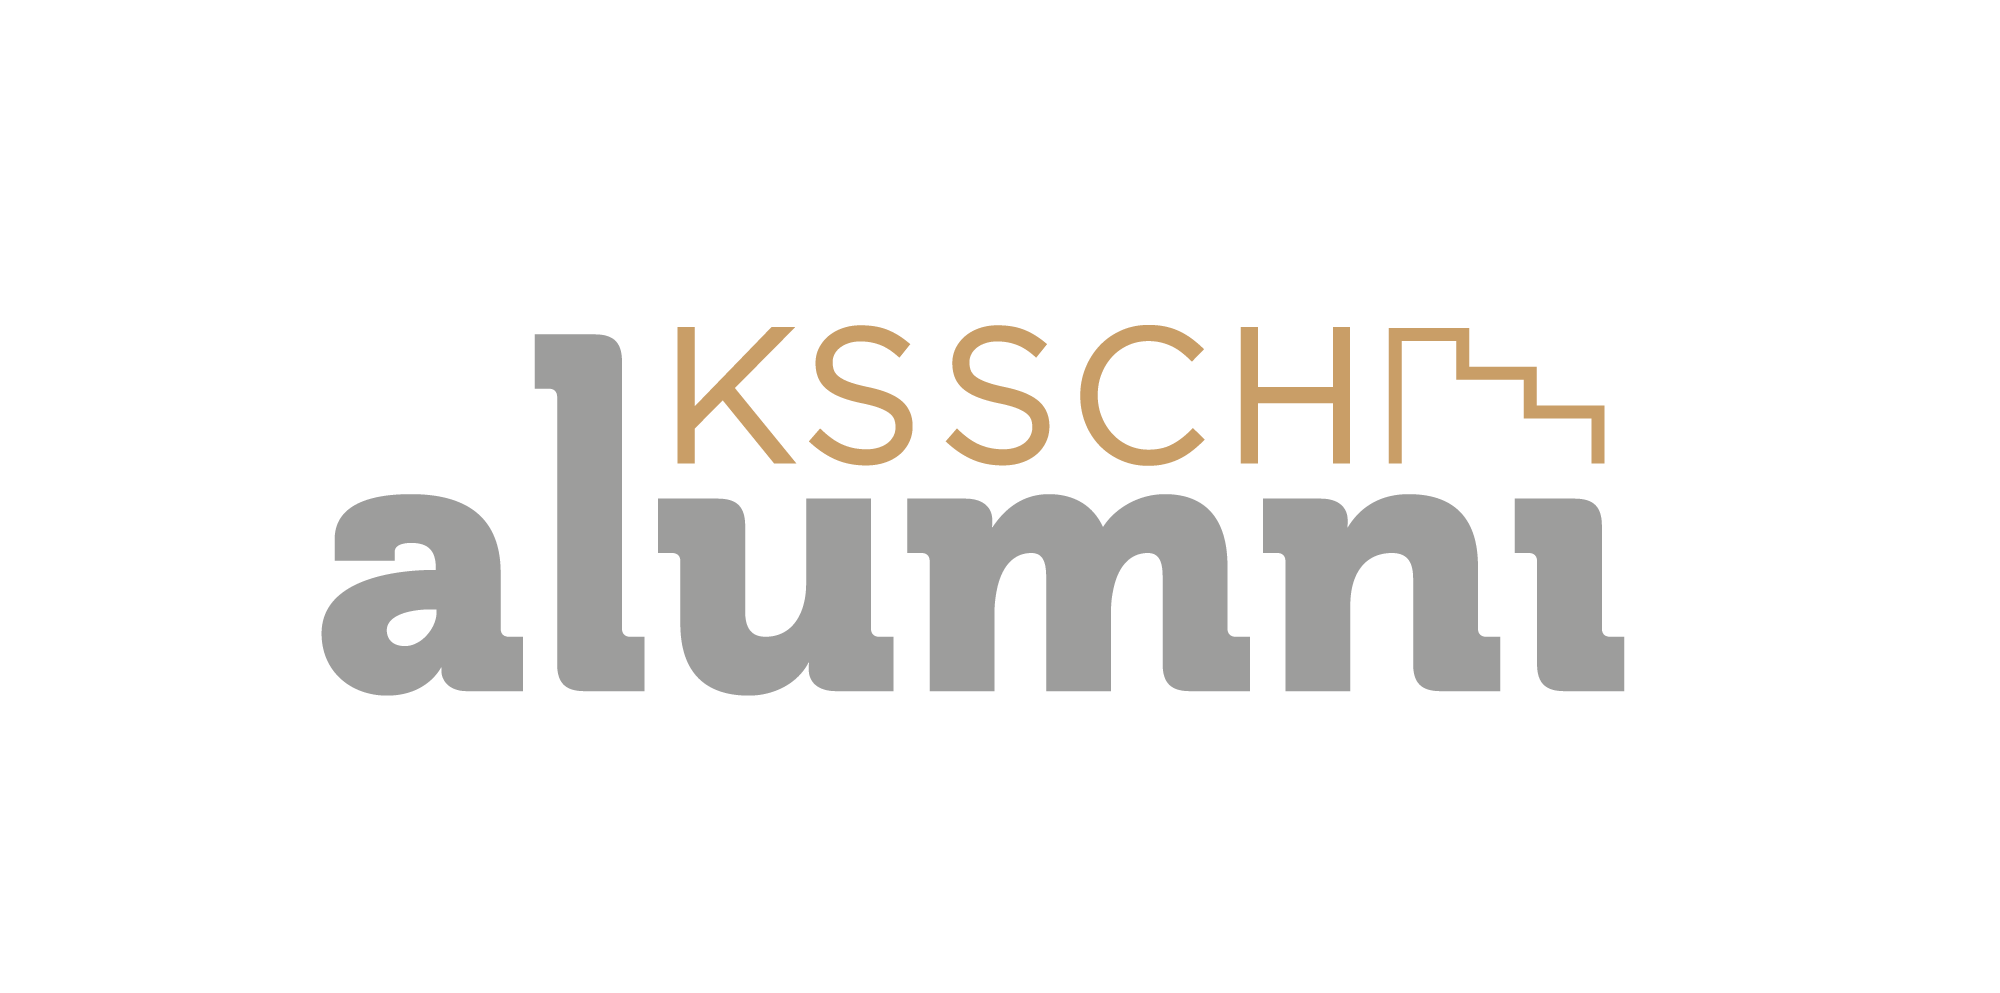 Logo alumni